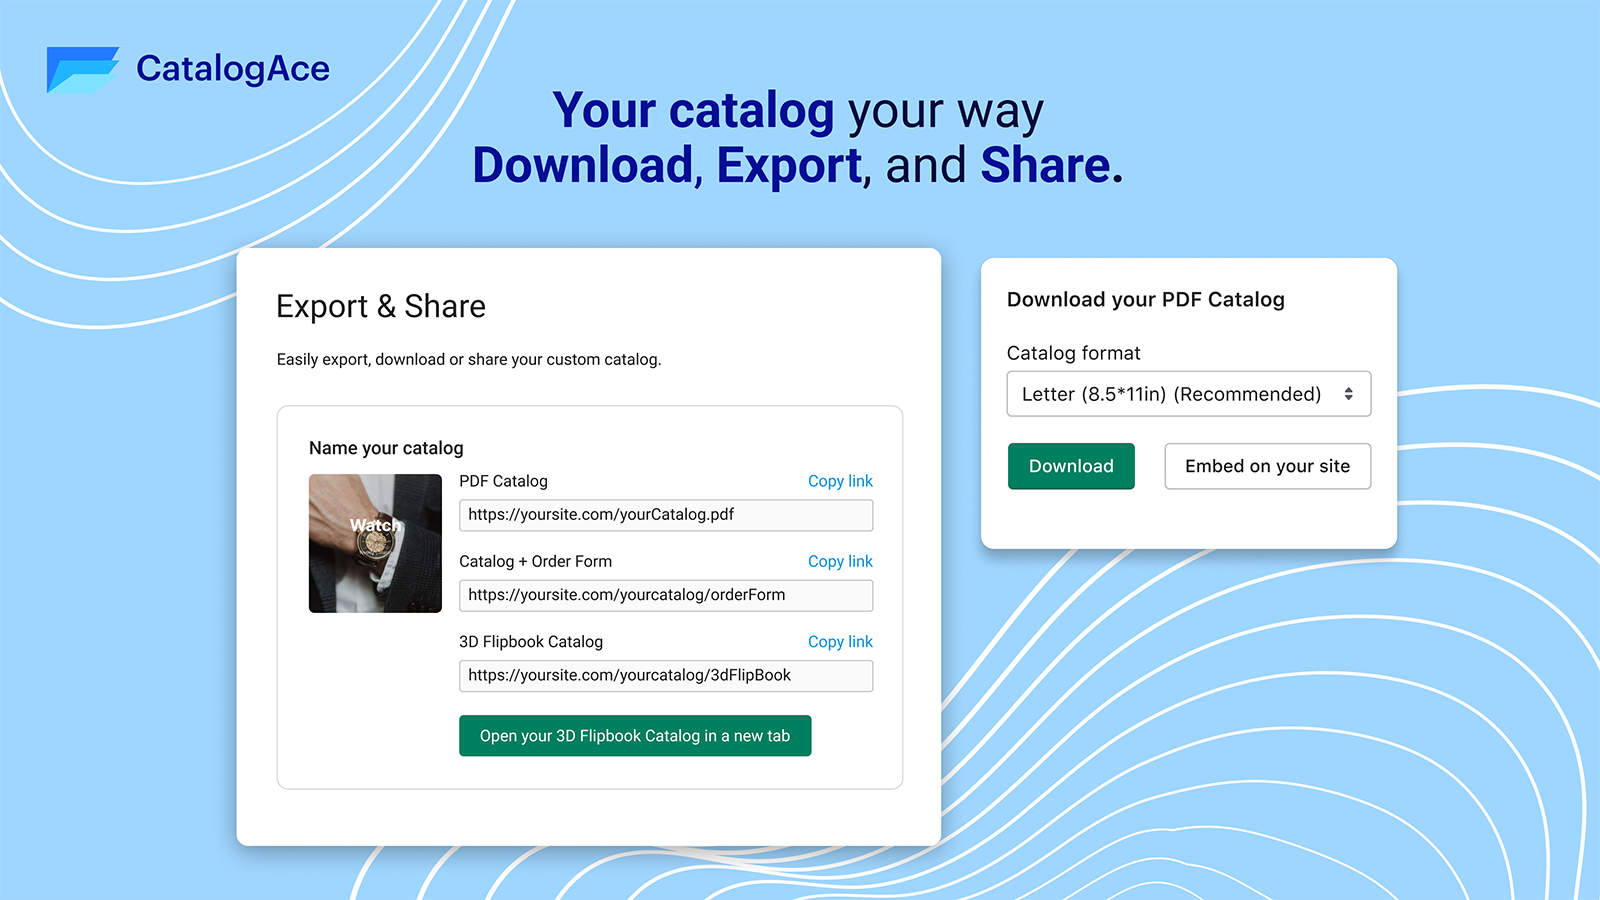 Del, download og eksporter kataloger til leverandører eller kunder